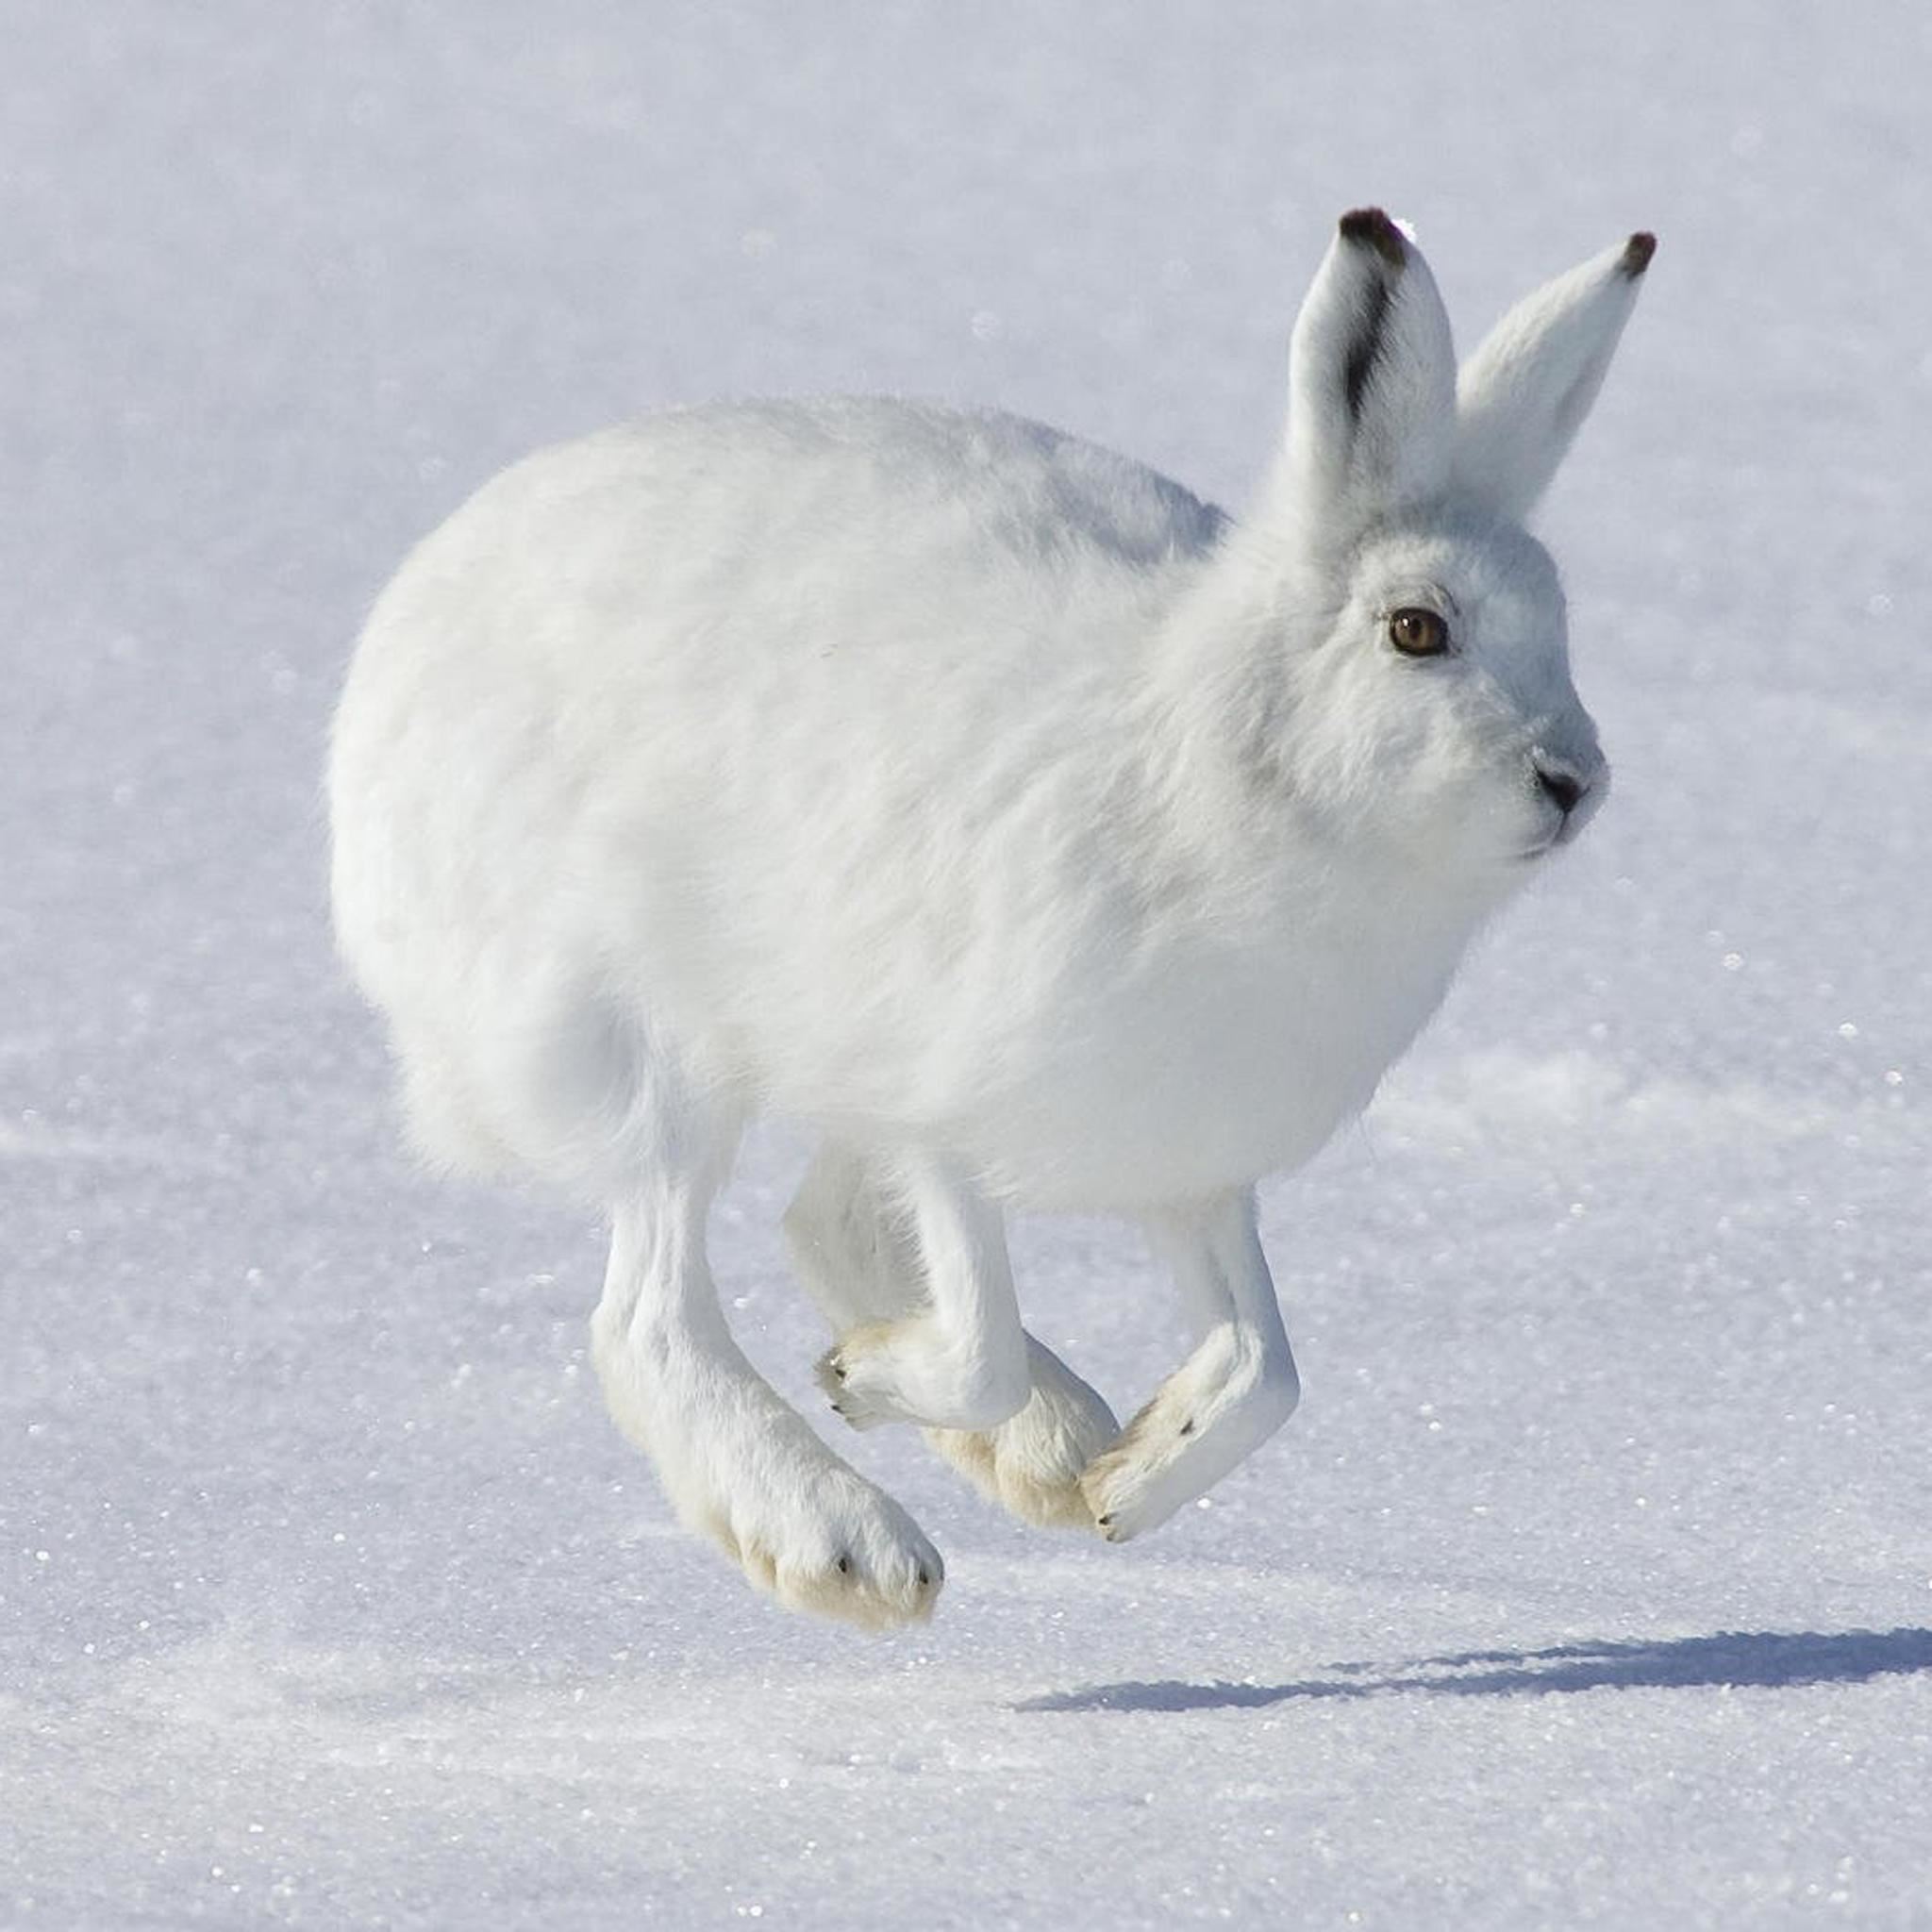 Jumping Wild Rabbit In Snow Field iPad Air wallpaper 